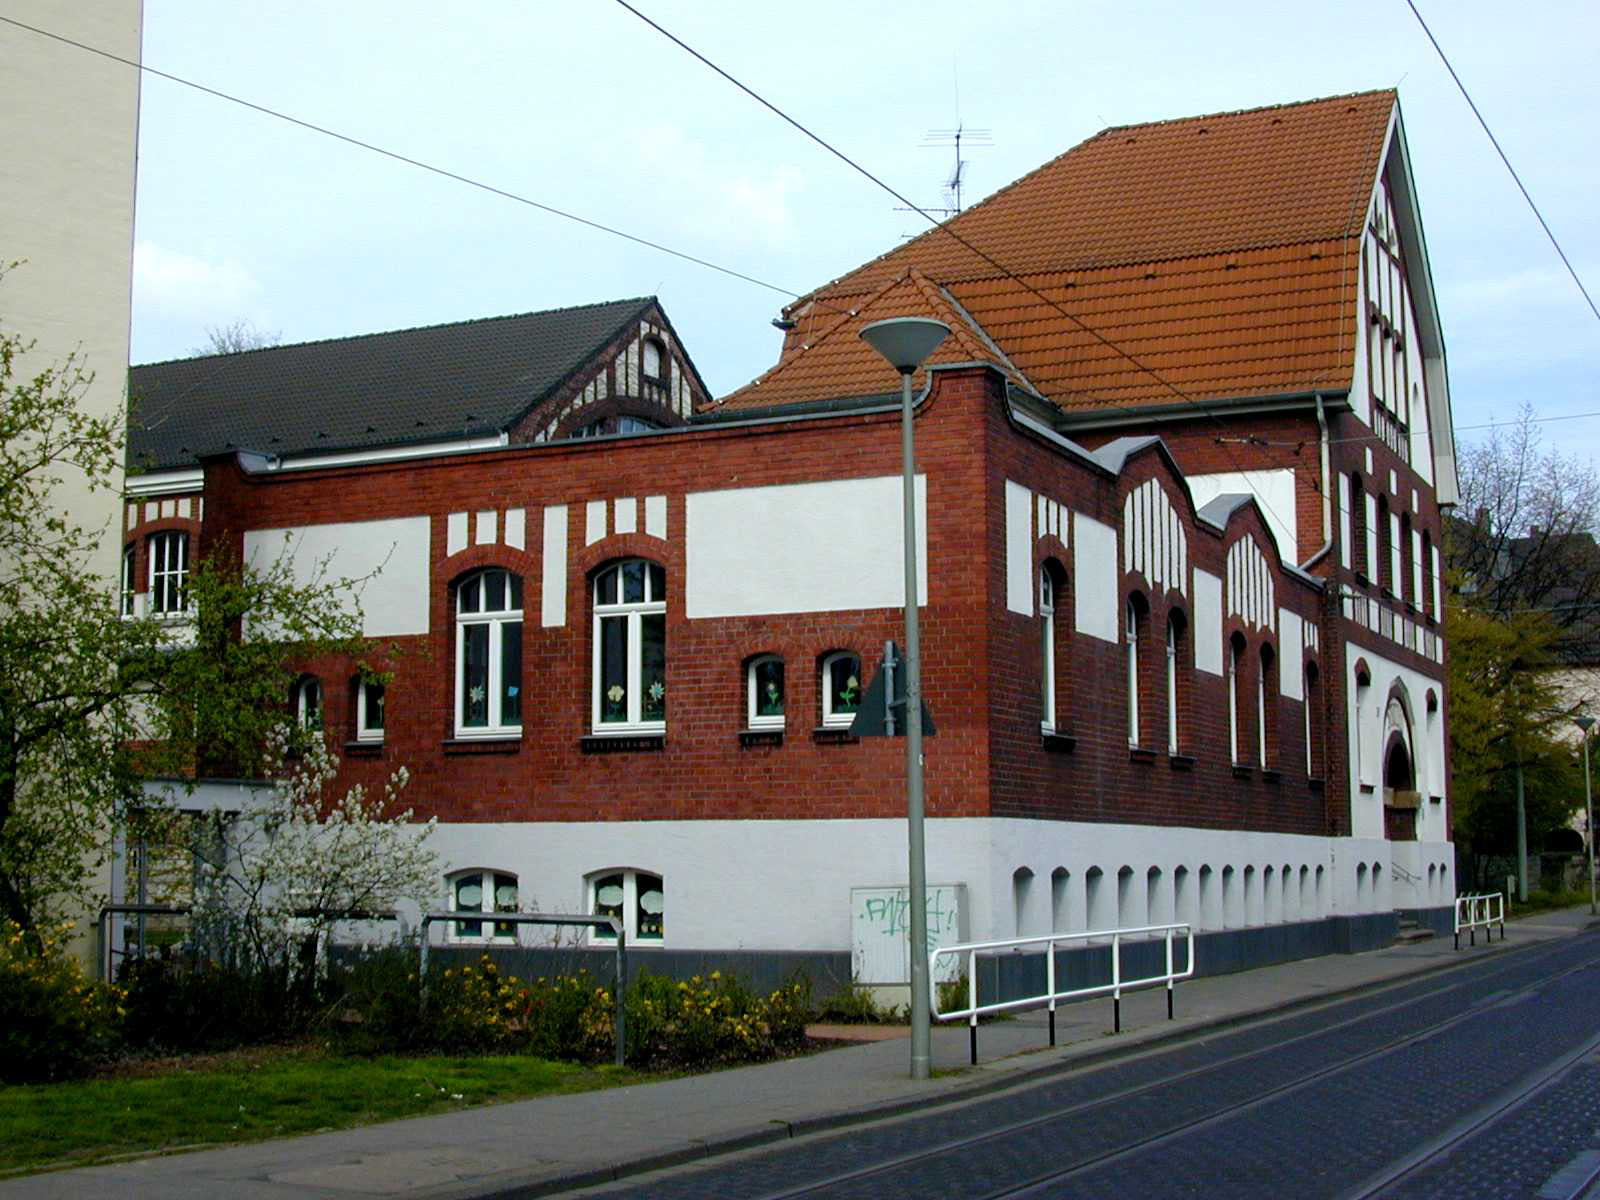 Die städtischen Tageseinrichtung für Kinder Kurfürstenstraße ist im Stadtbadgebäude untergebracht. Blick auf die Seitenwand der Tageseinrichtung für Kinder und die Giebelwand des Stadtbades in Uerdingen.